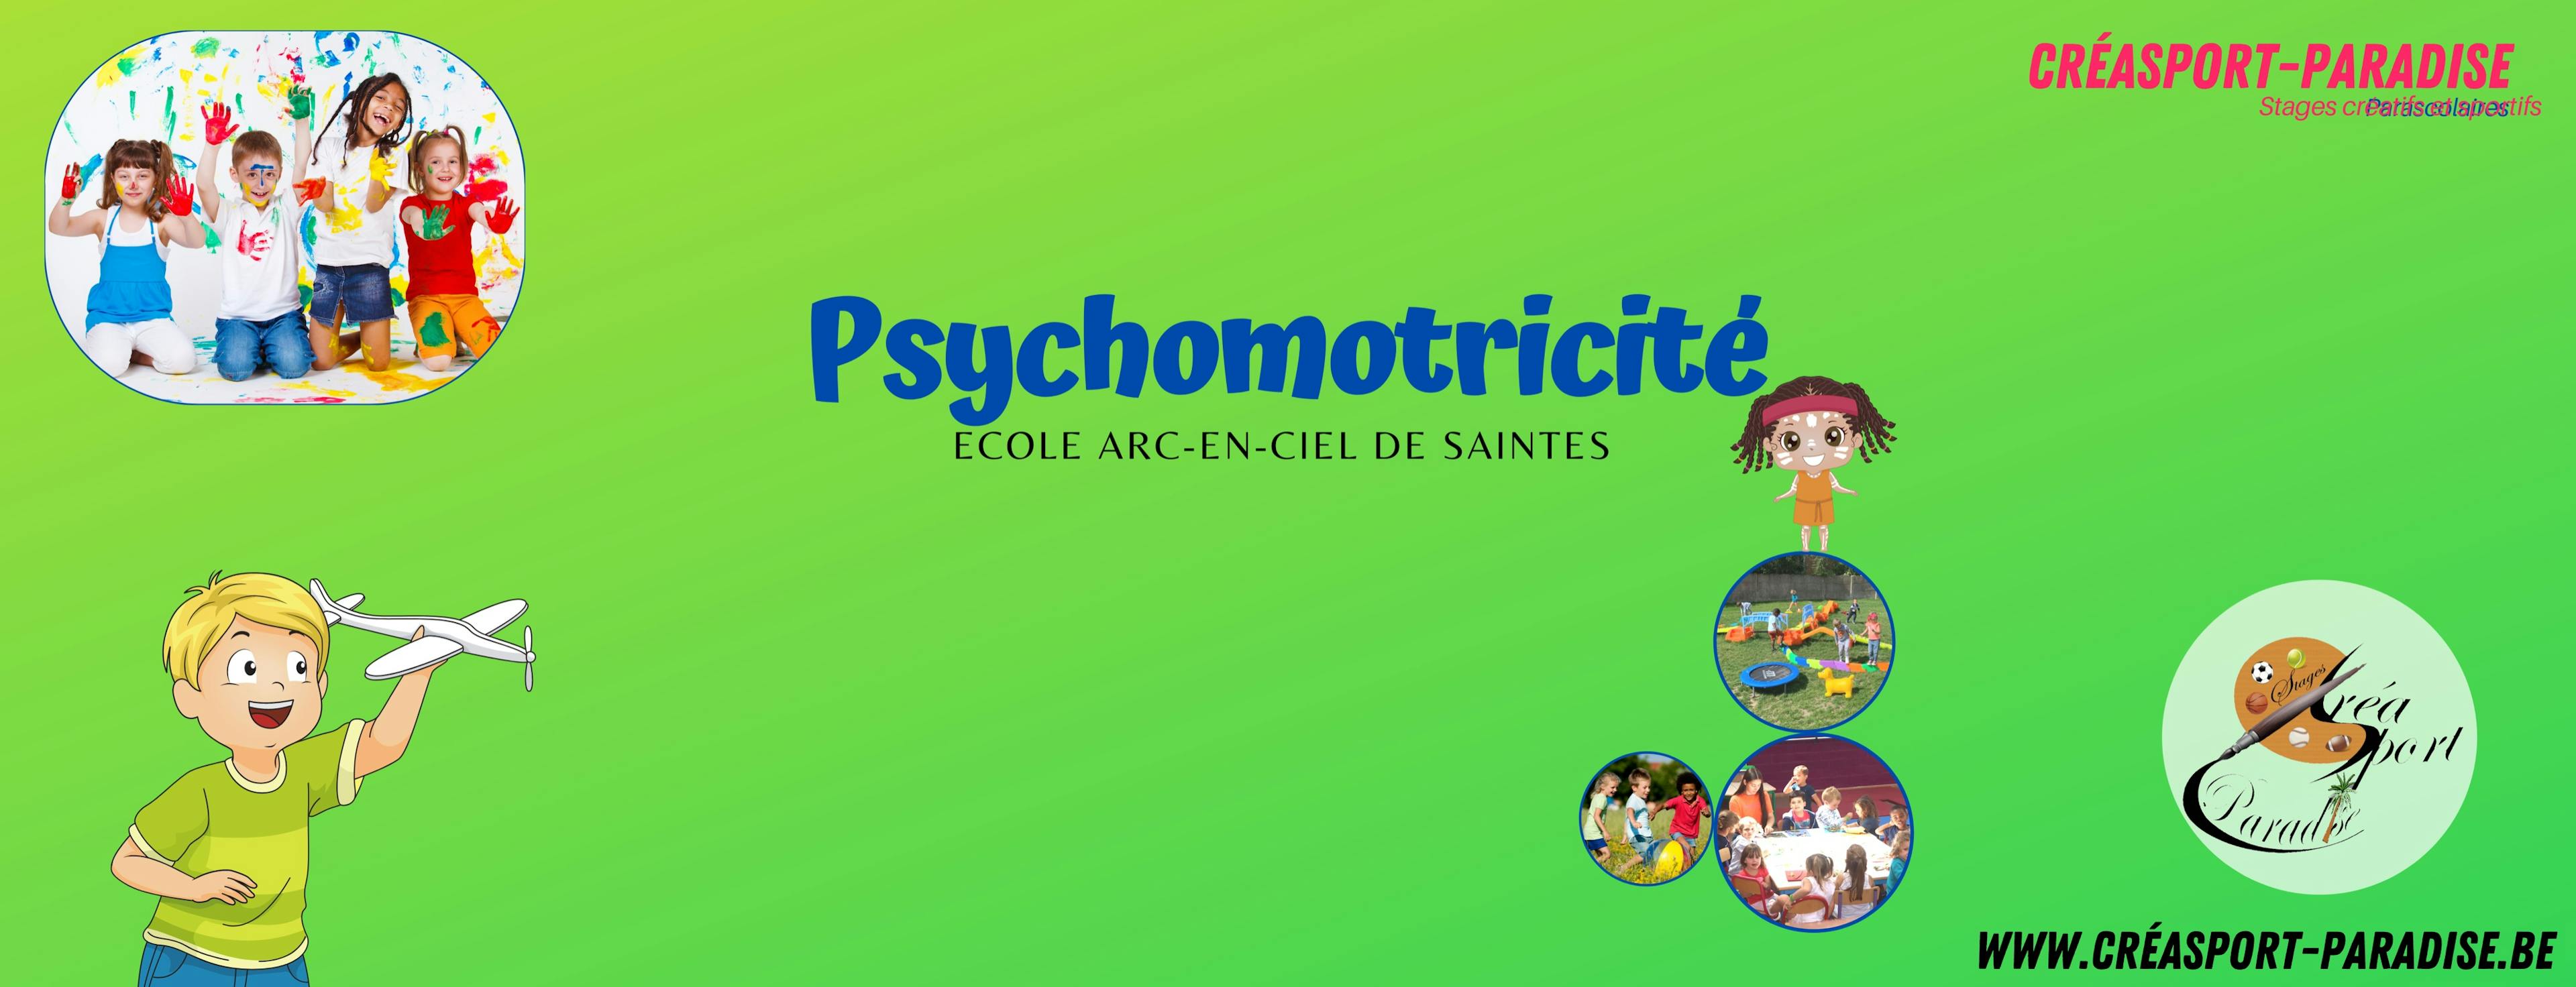 Parascolaires Ecole de Saintes - 15h20 JEUDI - Psychomotricité NDLS / FR